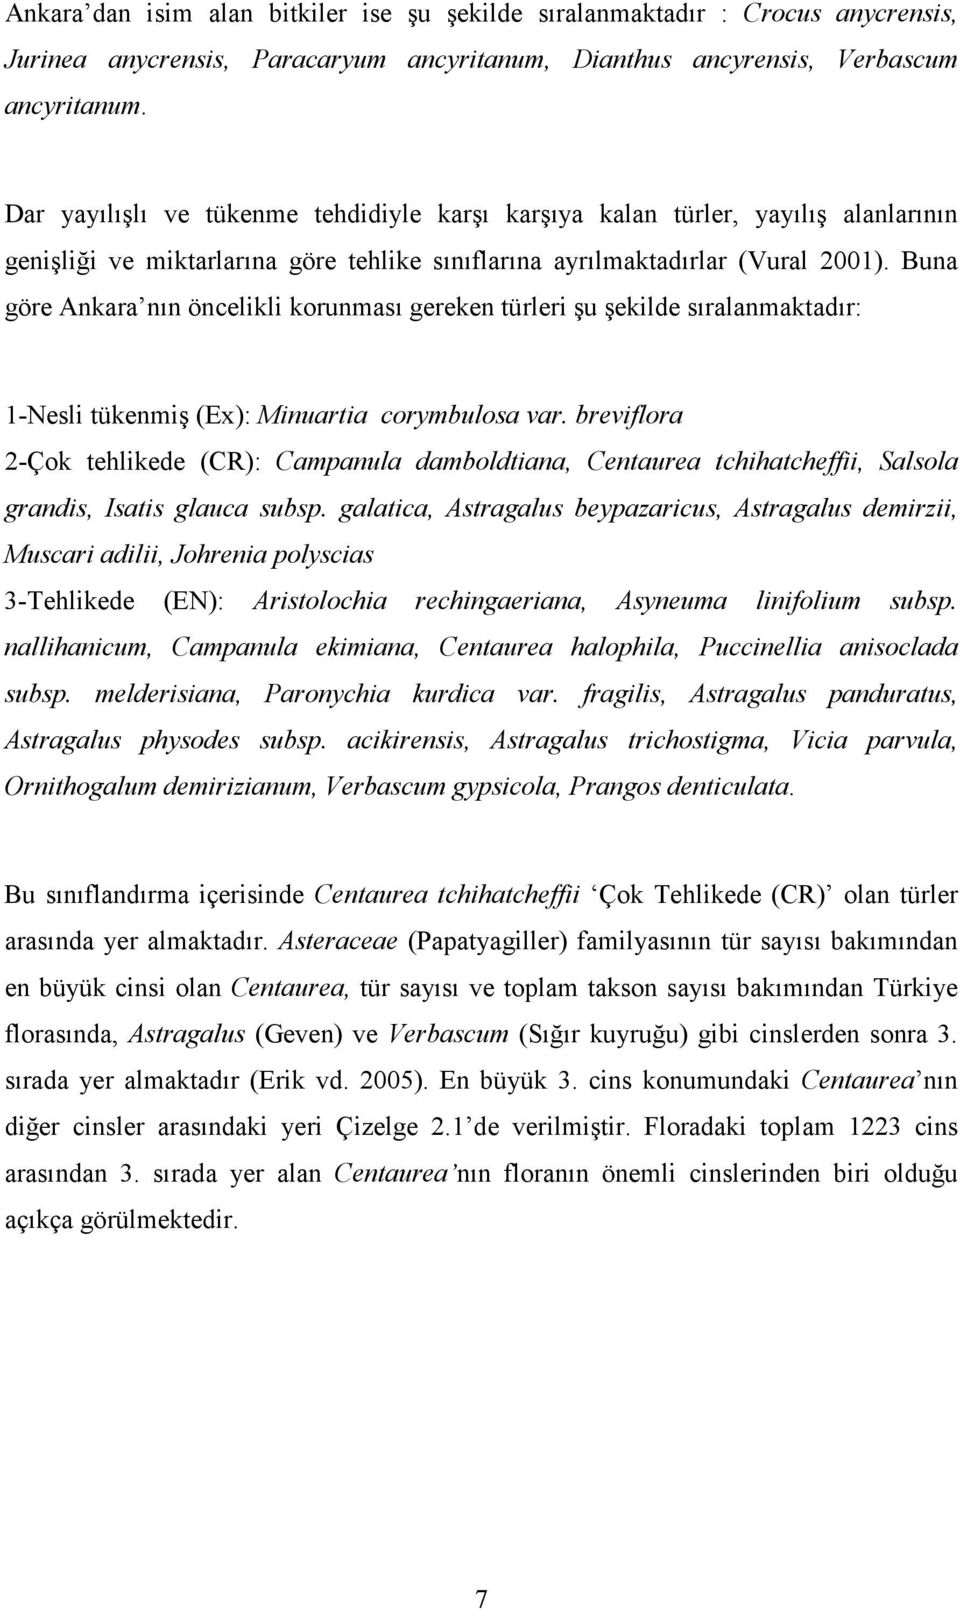 Buna göre Ankara nın öncelikli korunması gereken türleri şu şekilde sıralanmaktadır: 1-Nesli tükenmiş (Ex): Minuartia corymbulosa var.